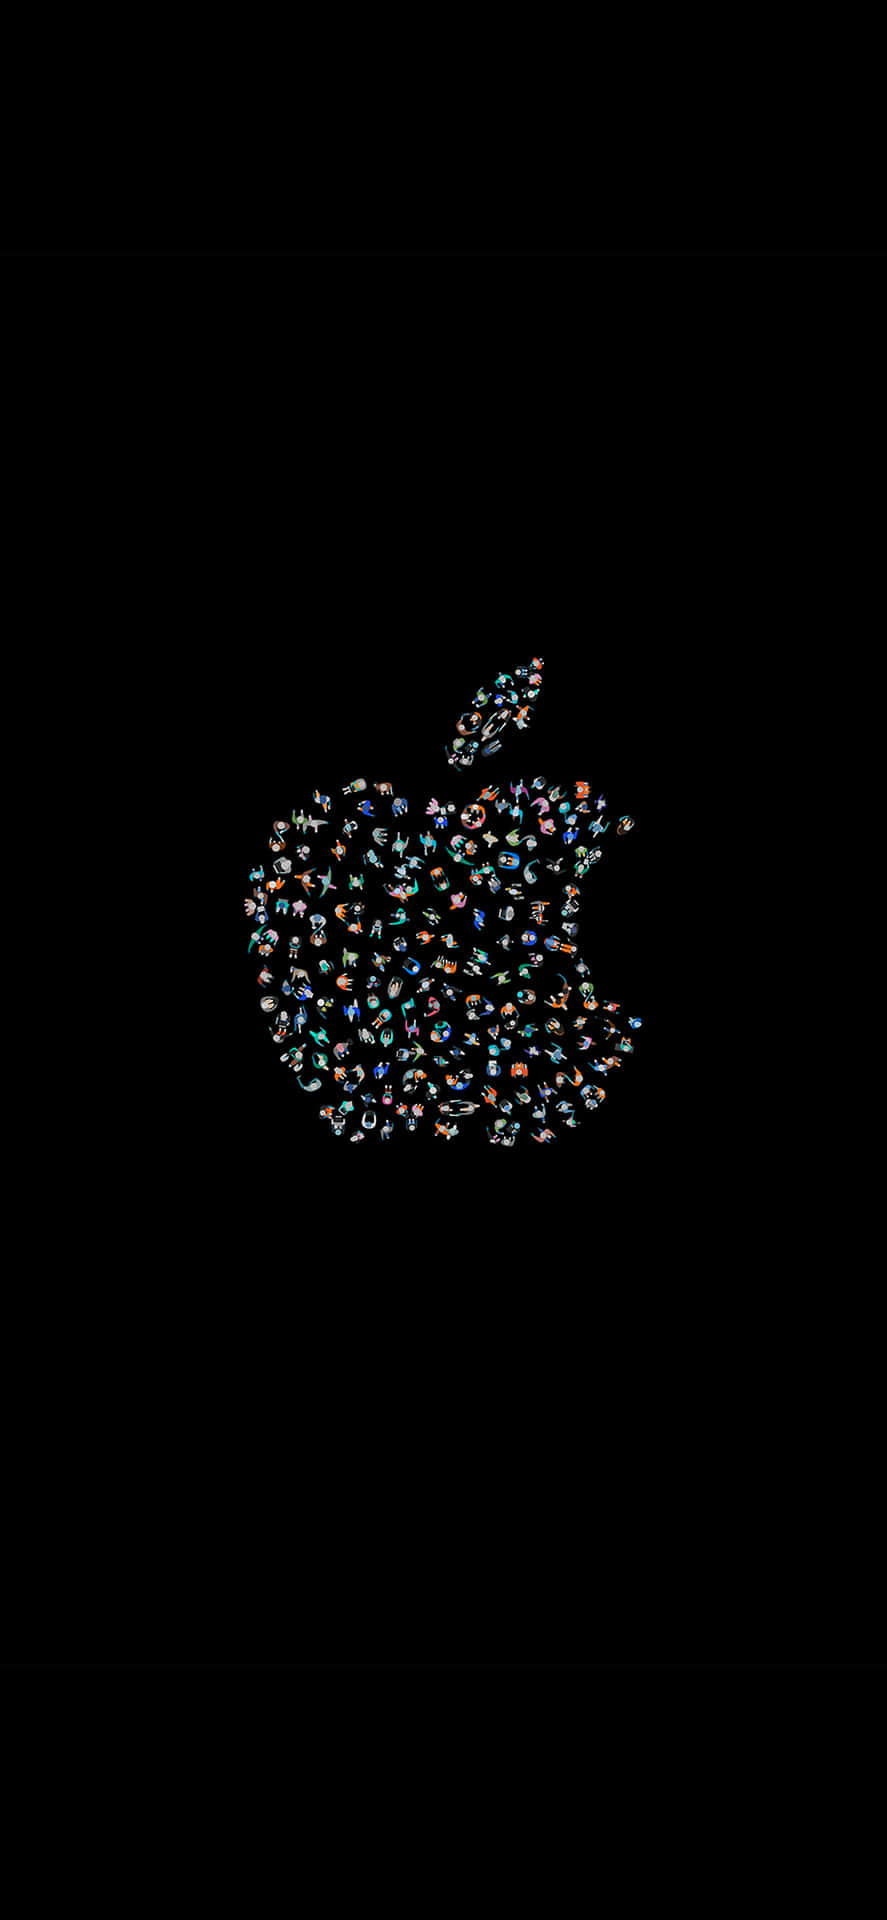 Logotipoinventivo Increíble Apple Hd Iphone Fondo de pantalla